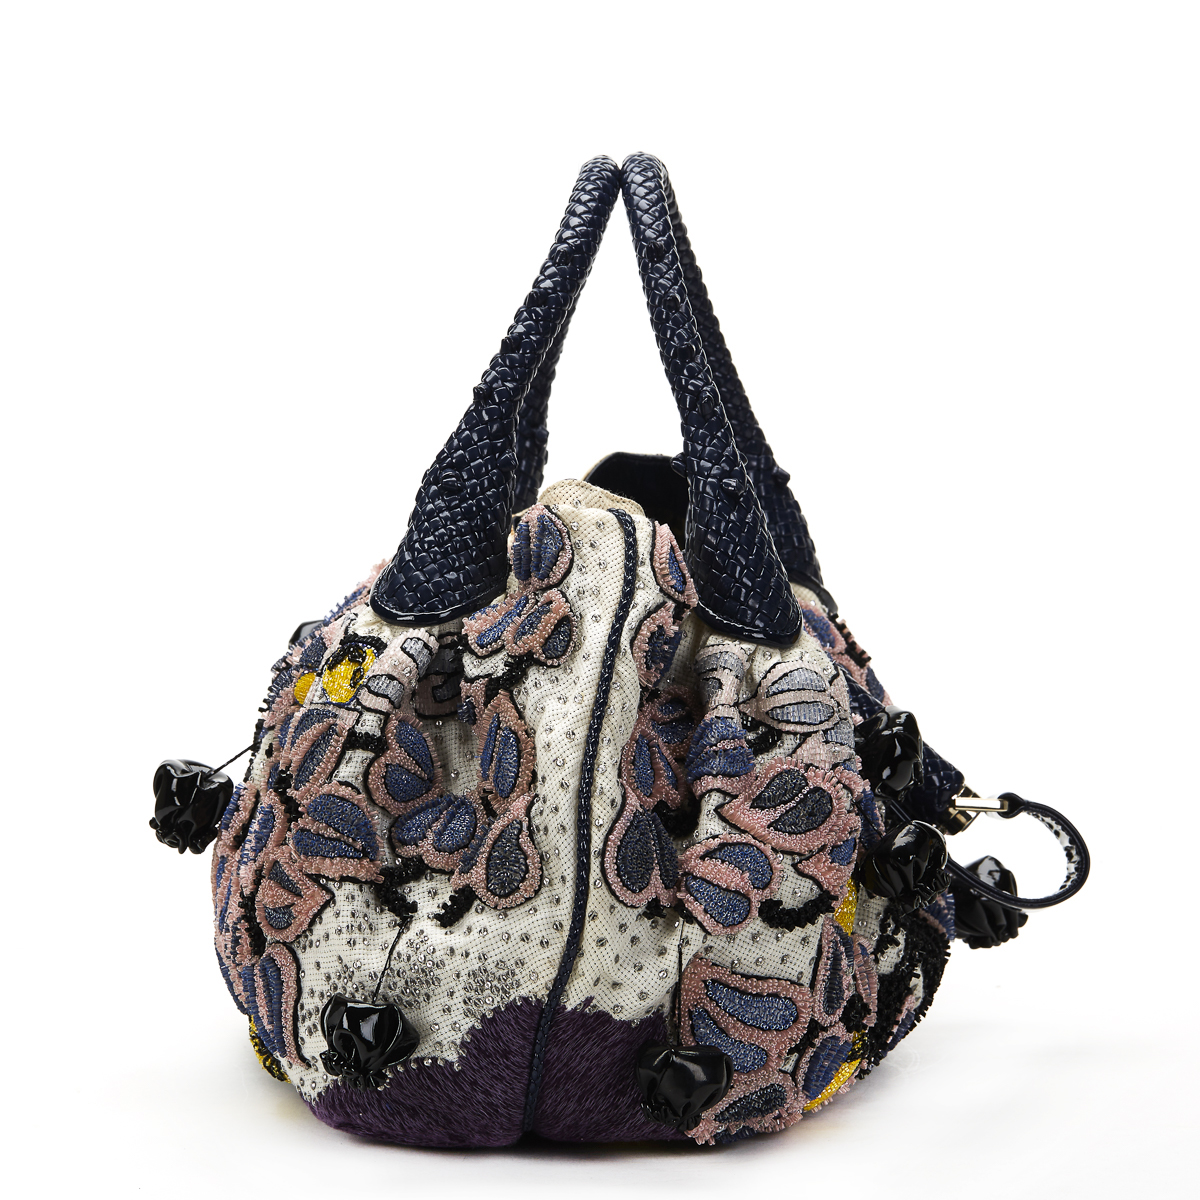 FENDI Spy Bag , - Multicolour Embellished Floral Spy Bag   TYPE Tote, Shoulder SERIAL NUMBER 2415- - Image 12 of 16